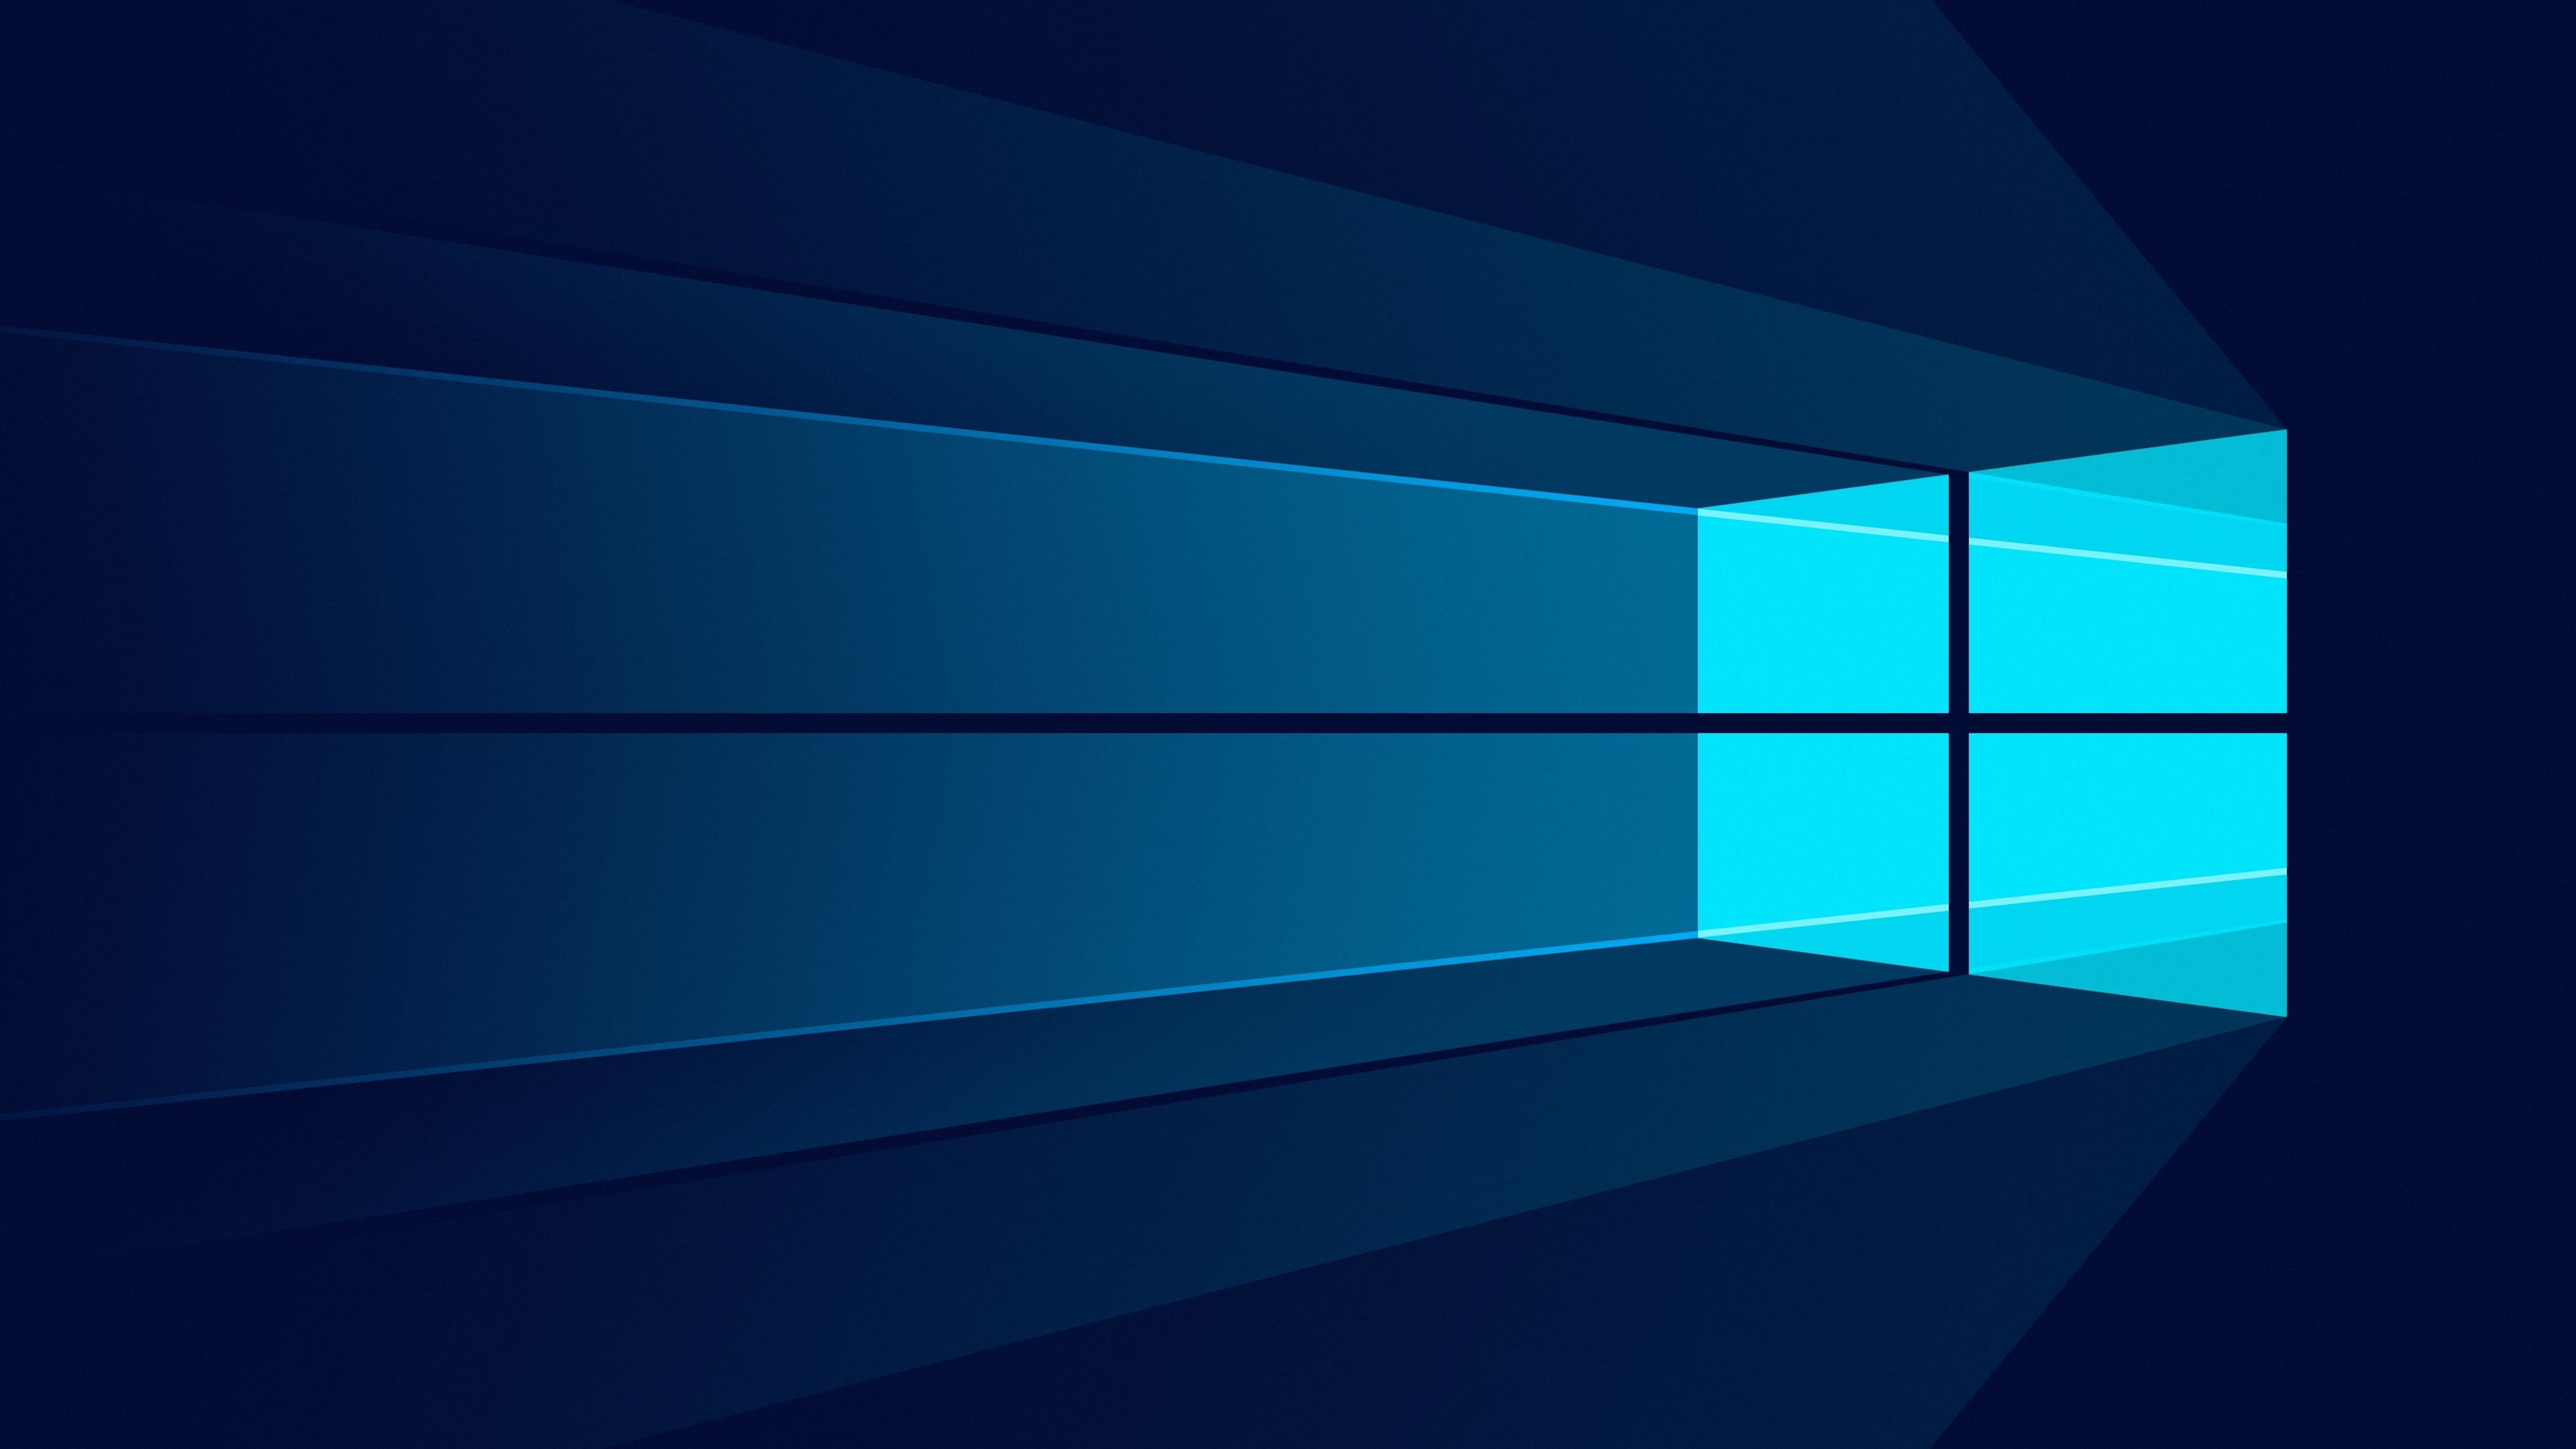 Hình nền Windows 8k là lựa chọn tuyệt vời cho những ai yêu thích thiết kế độc đáo và sắc nét. Tận hưởng trọn vẹn độ phân giải và sự tinh tế của Windows Wallpapers 8k, hãy xem ngay hình ảnh liên quan.